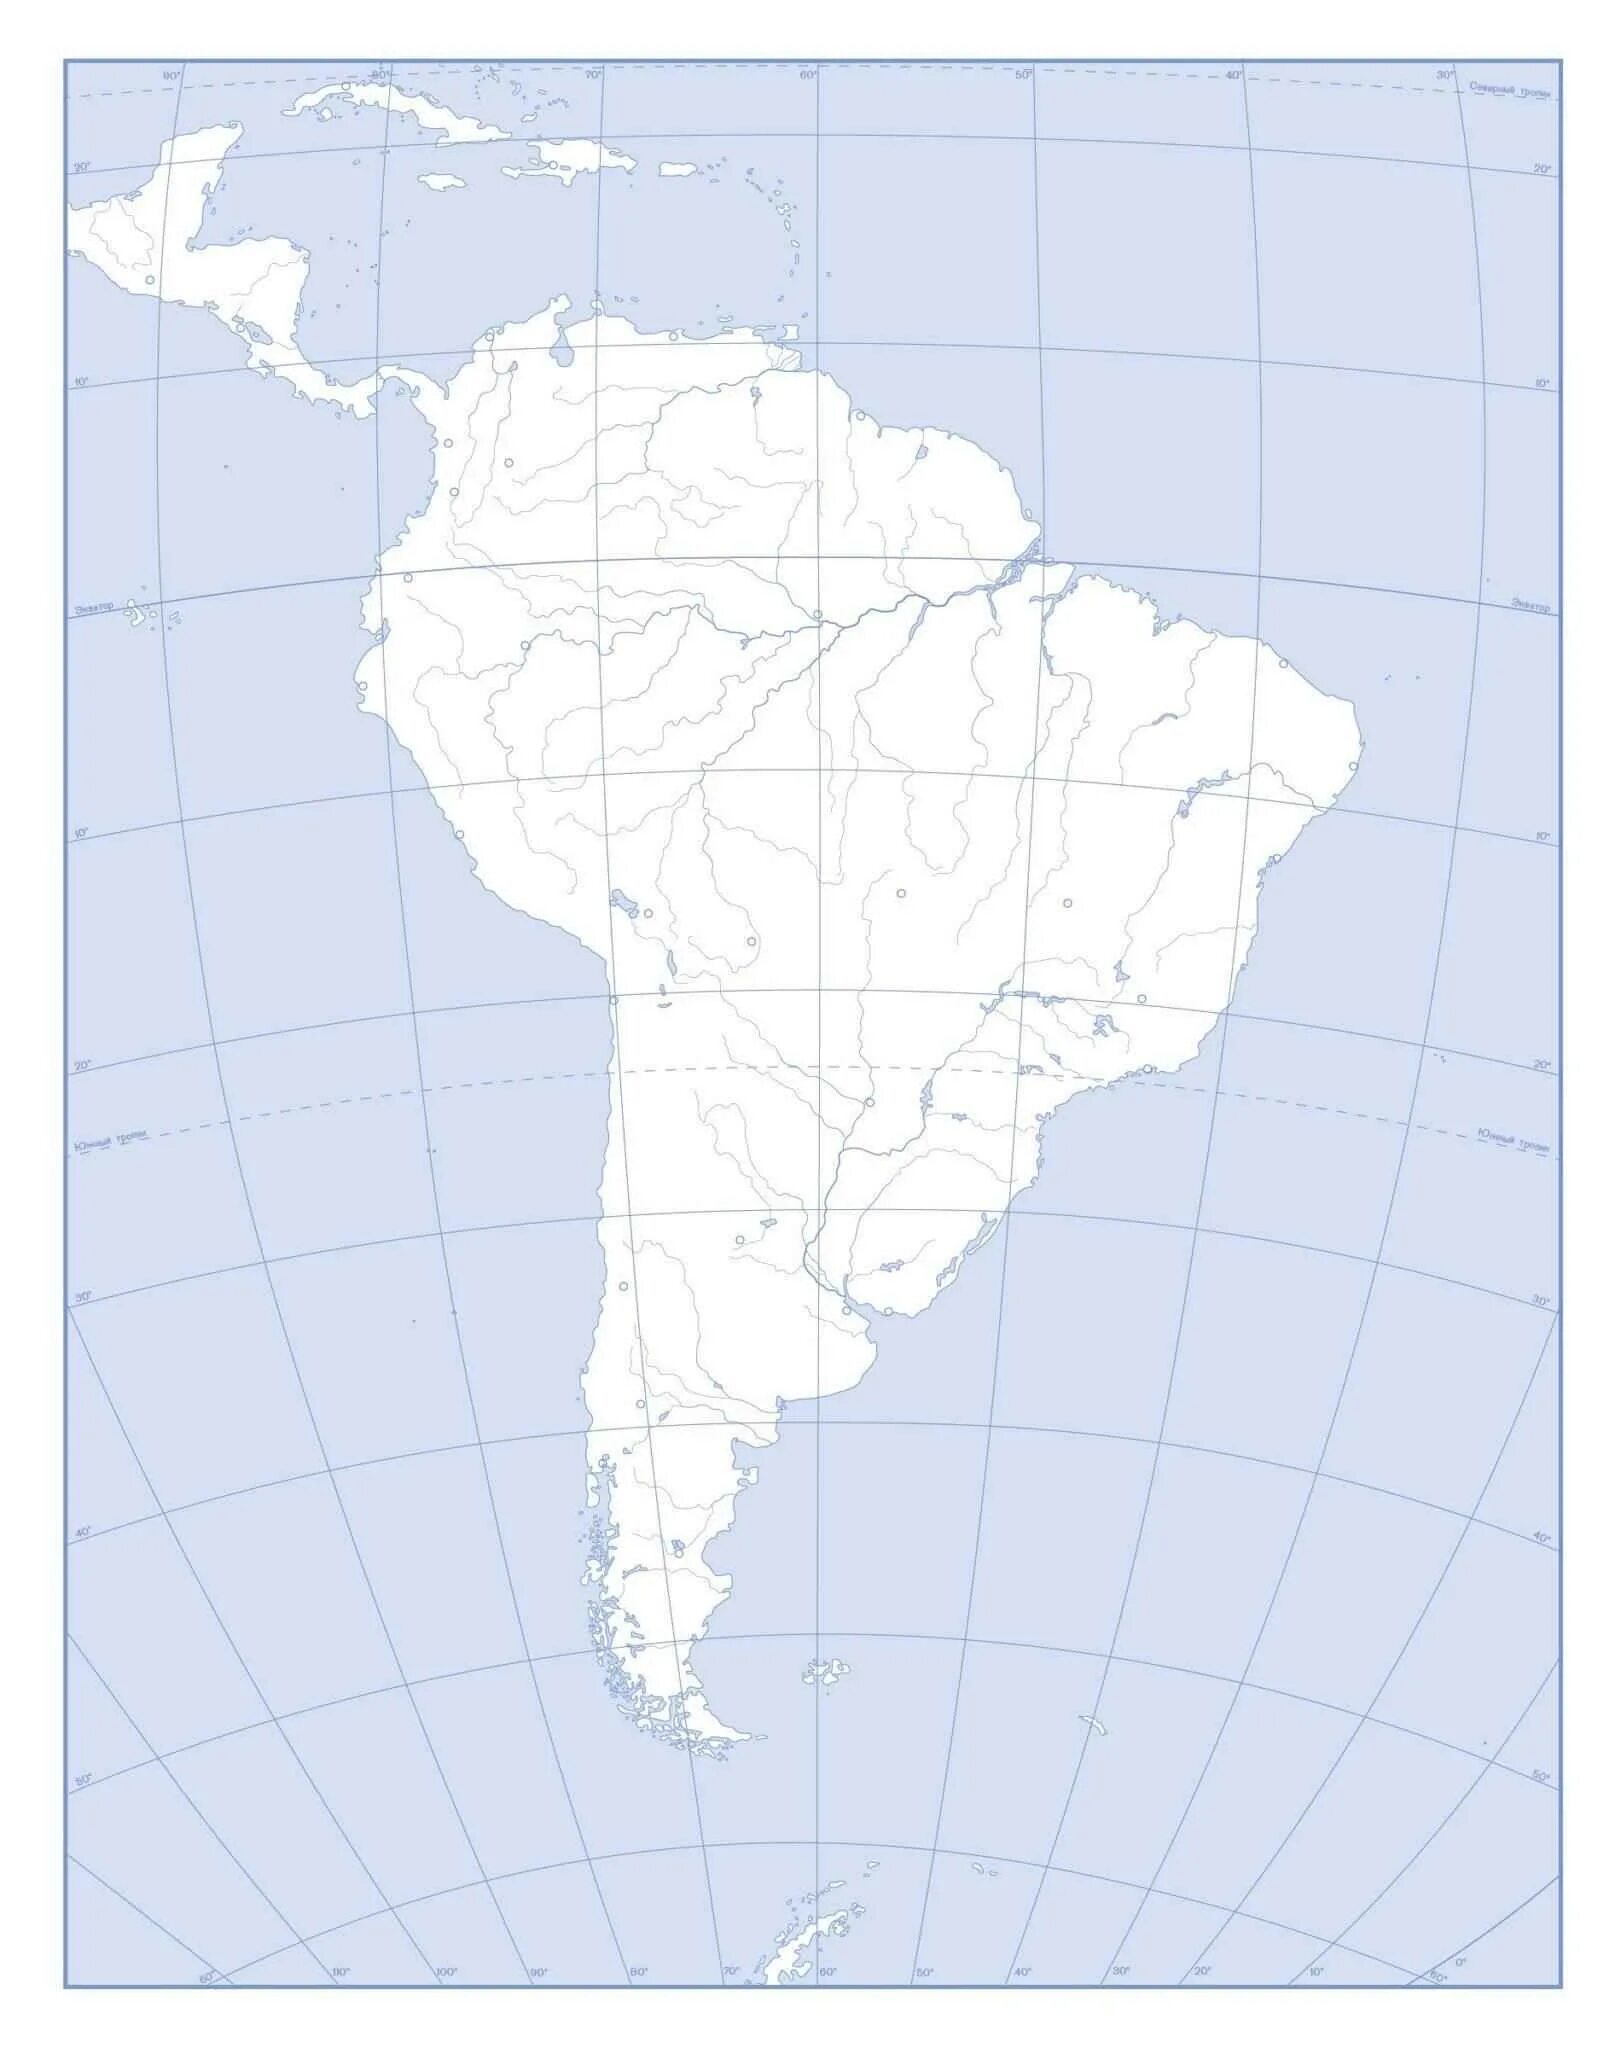 Контурная карта Южной Америки. Пустая карта Южной Америки. Политическая карта Южной Америки контурная карта. Физическая карта Южной Америки контурная карта.